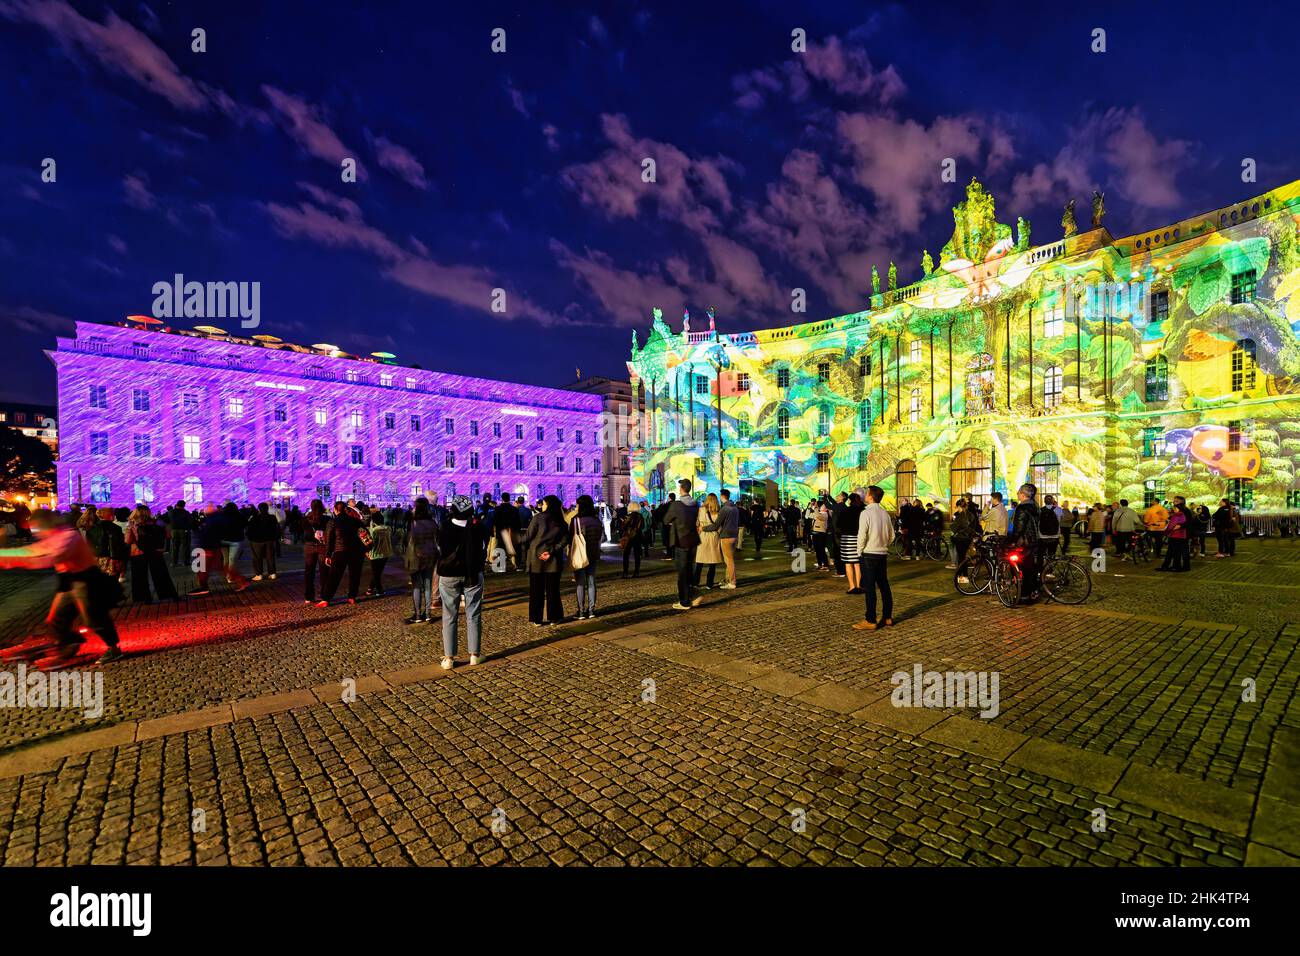 Bebelplatz durante il Festival delle luci, Unter den Linden, Berlino, Germania, Europa Foto Stock